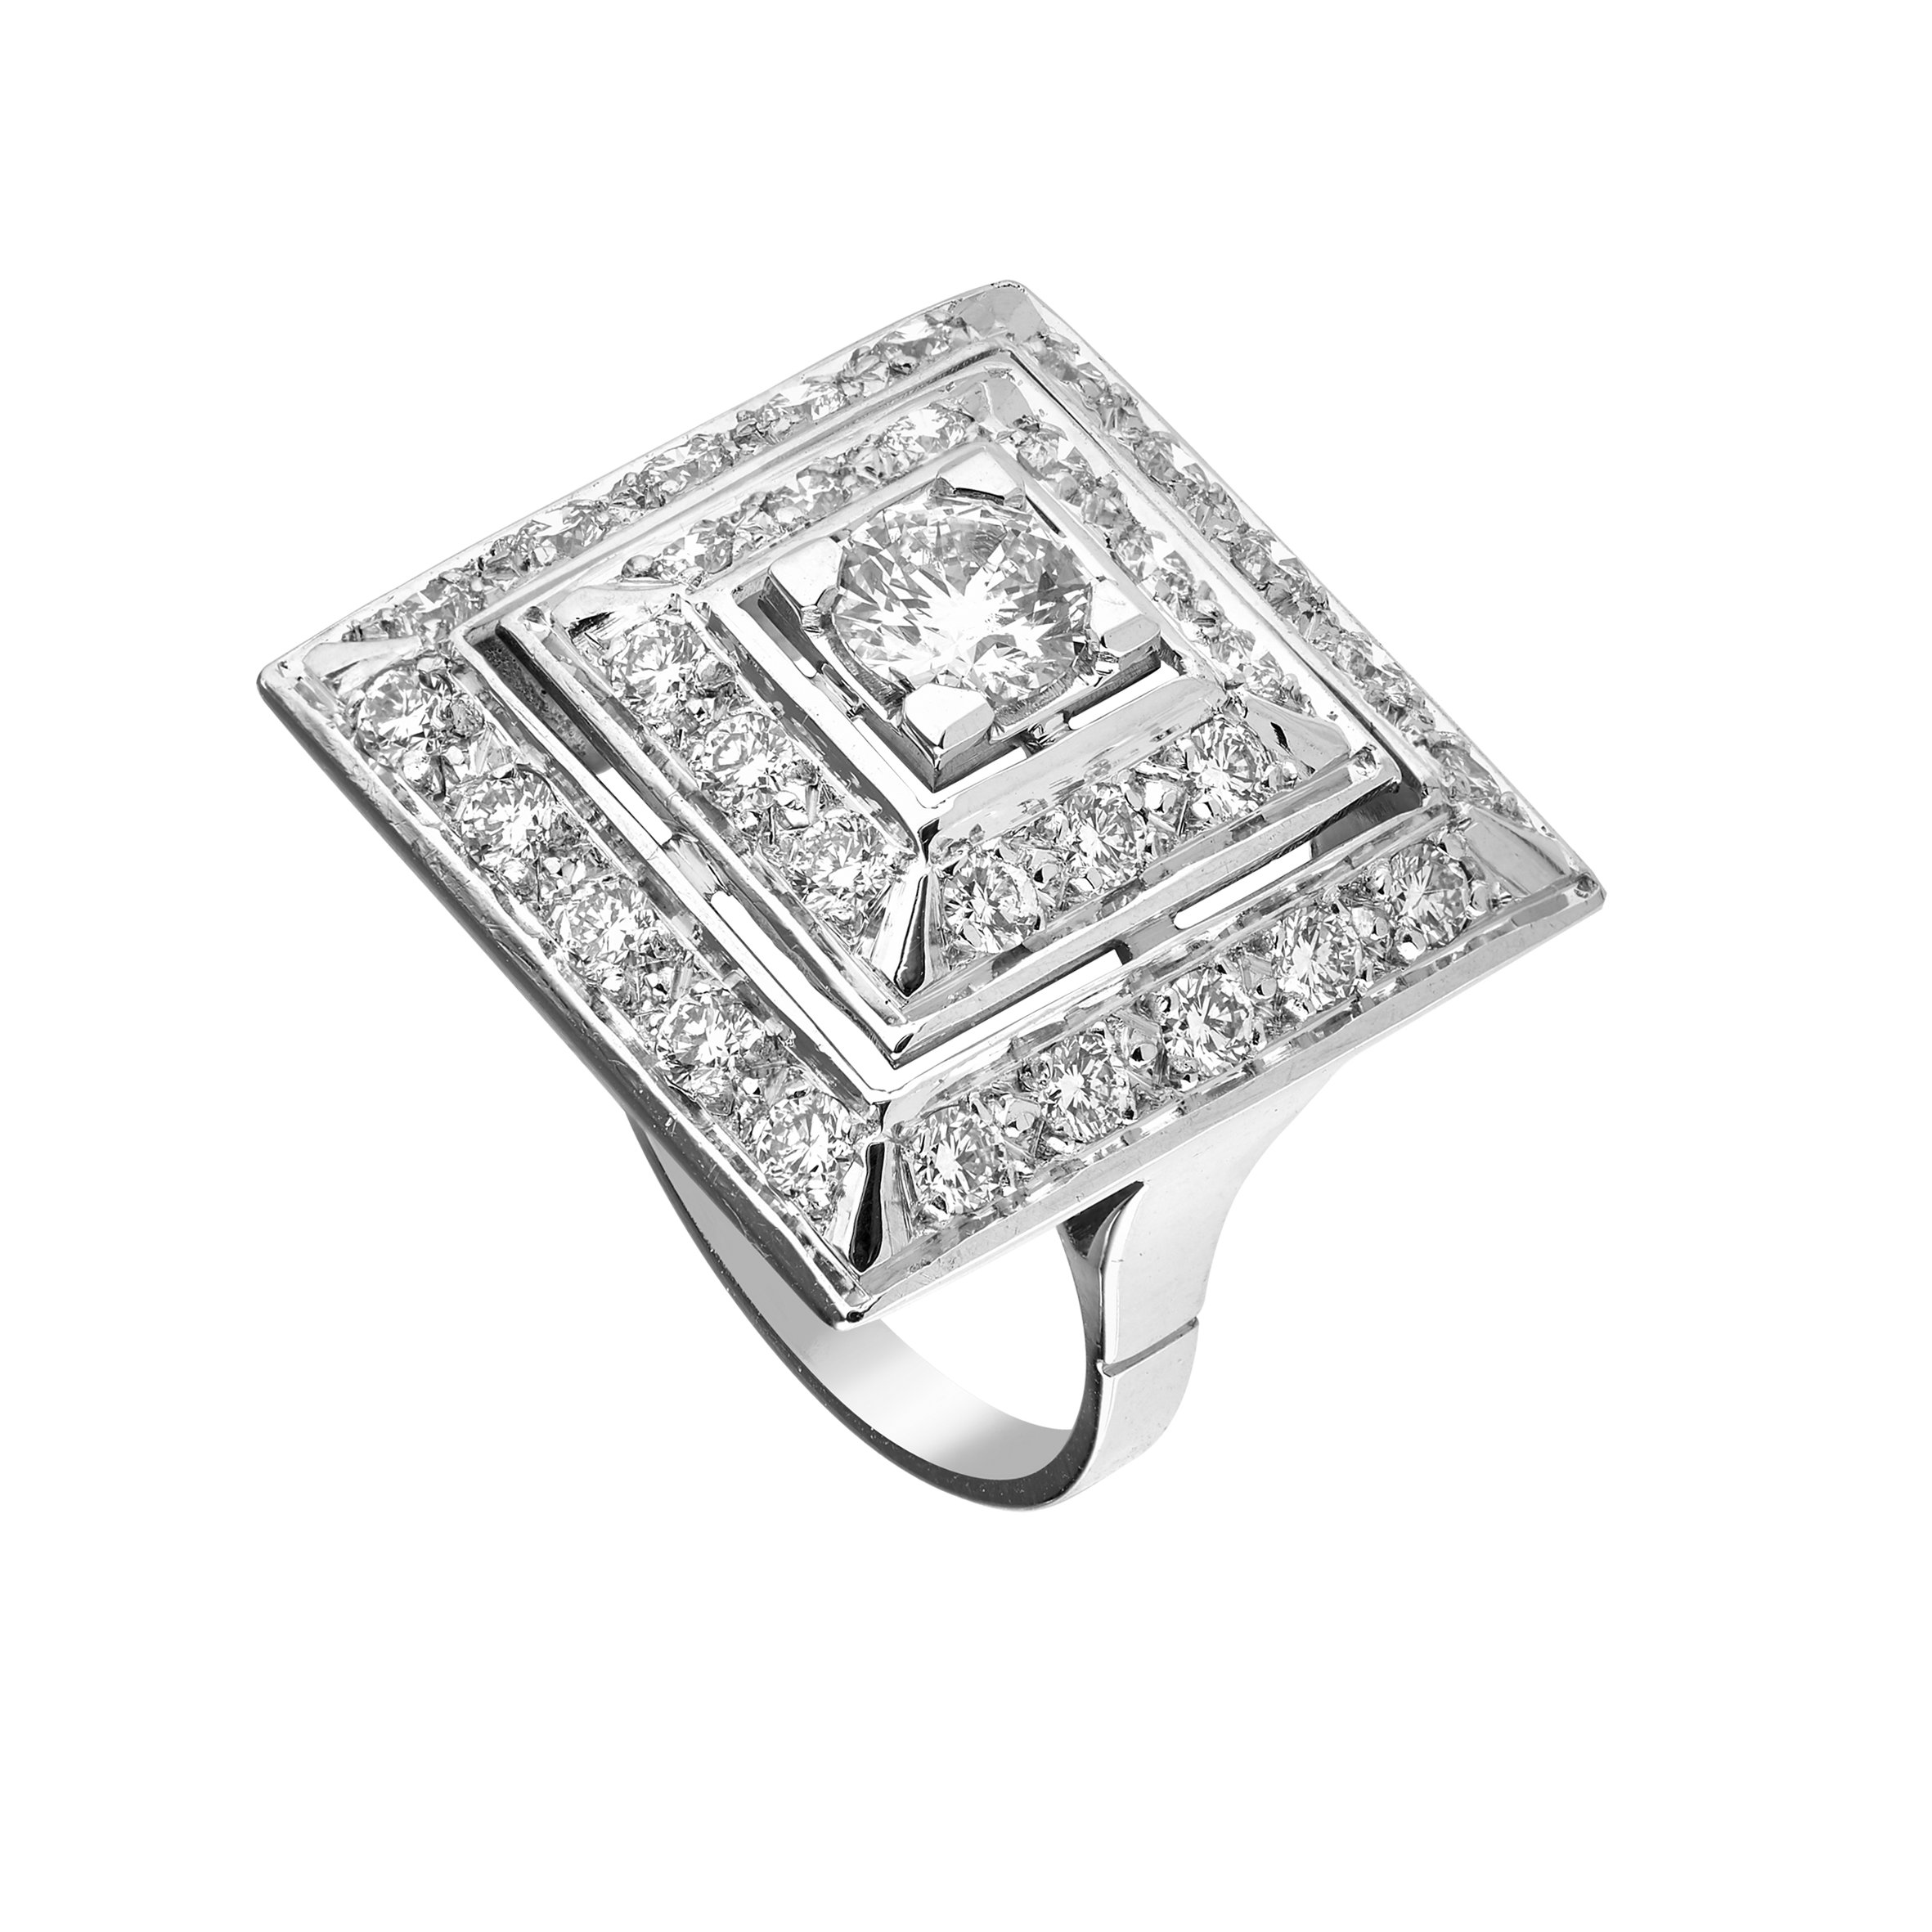 Bague carrée diamants vers 1950 Gerphagnon